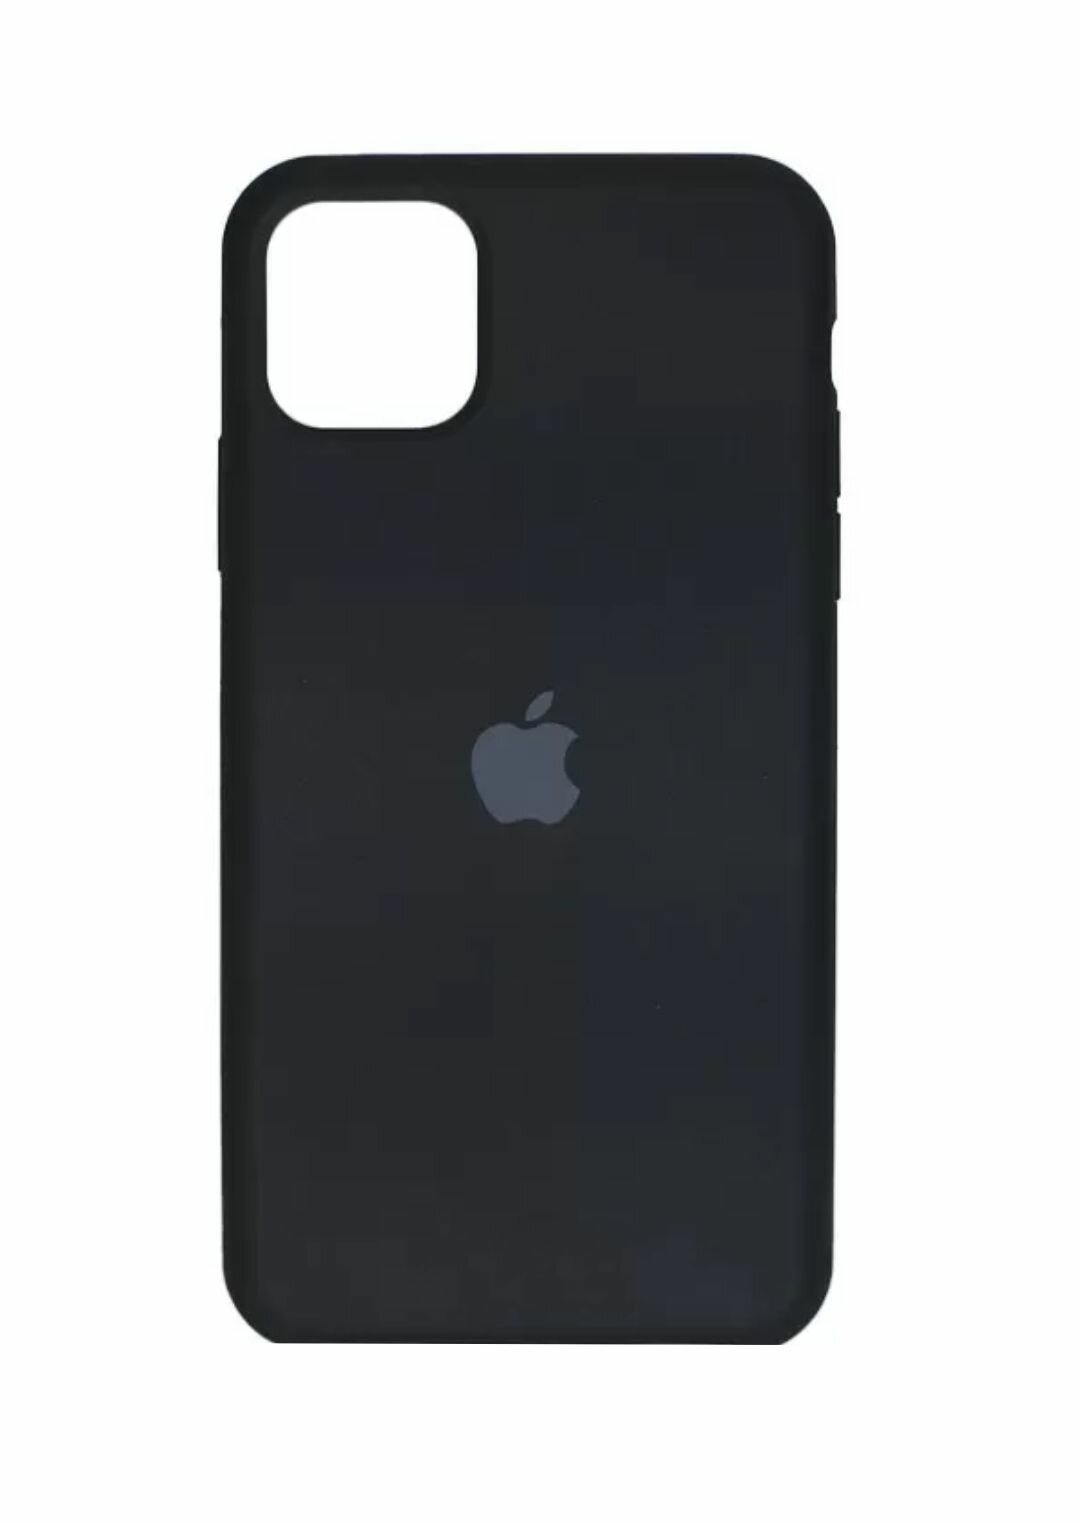 Apple iPhone 15 pro под оригинальный чёрный чехол для эпл айфон 15 про Silicone case, замша, утолщённый, противоударный